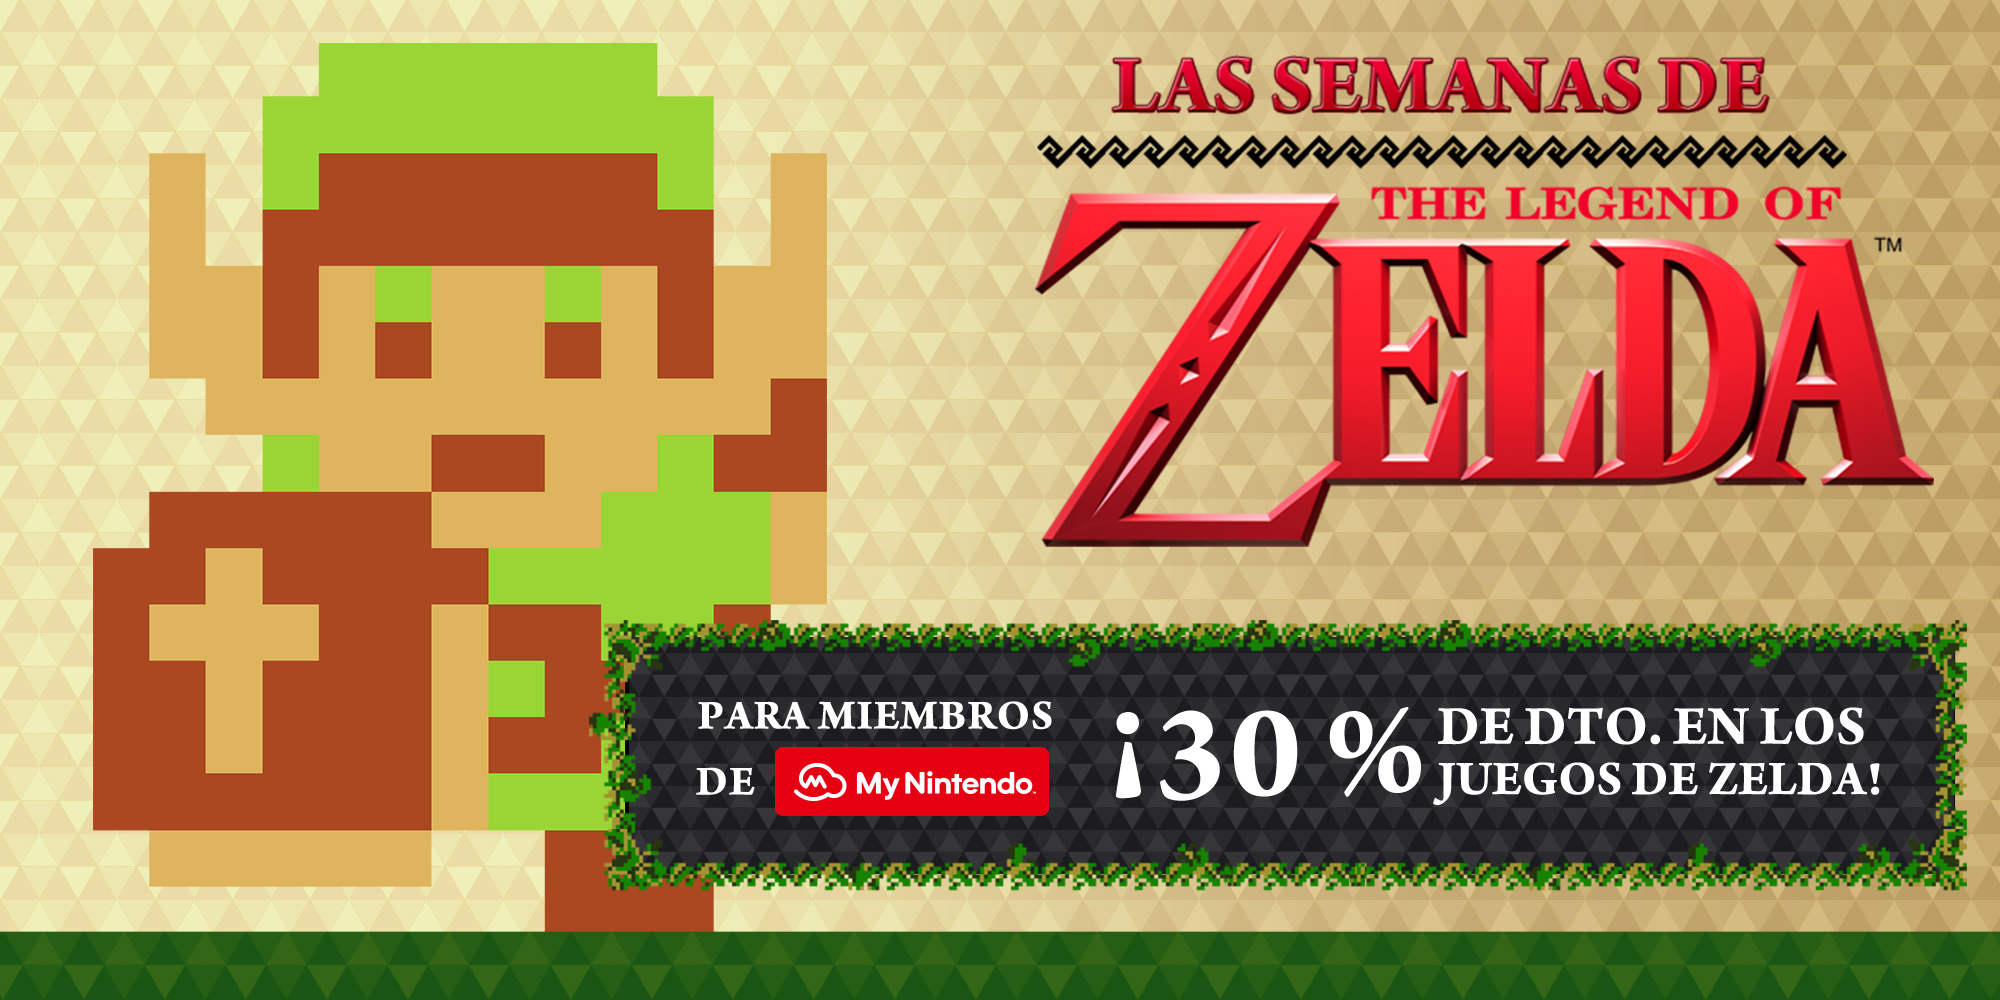 Promoción en Nintendo eShop: Las semanas de The Legend of Zelda™ 2017